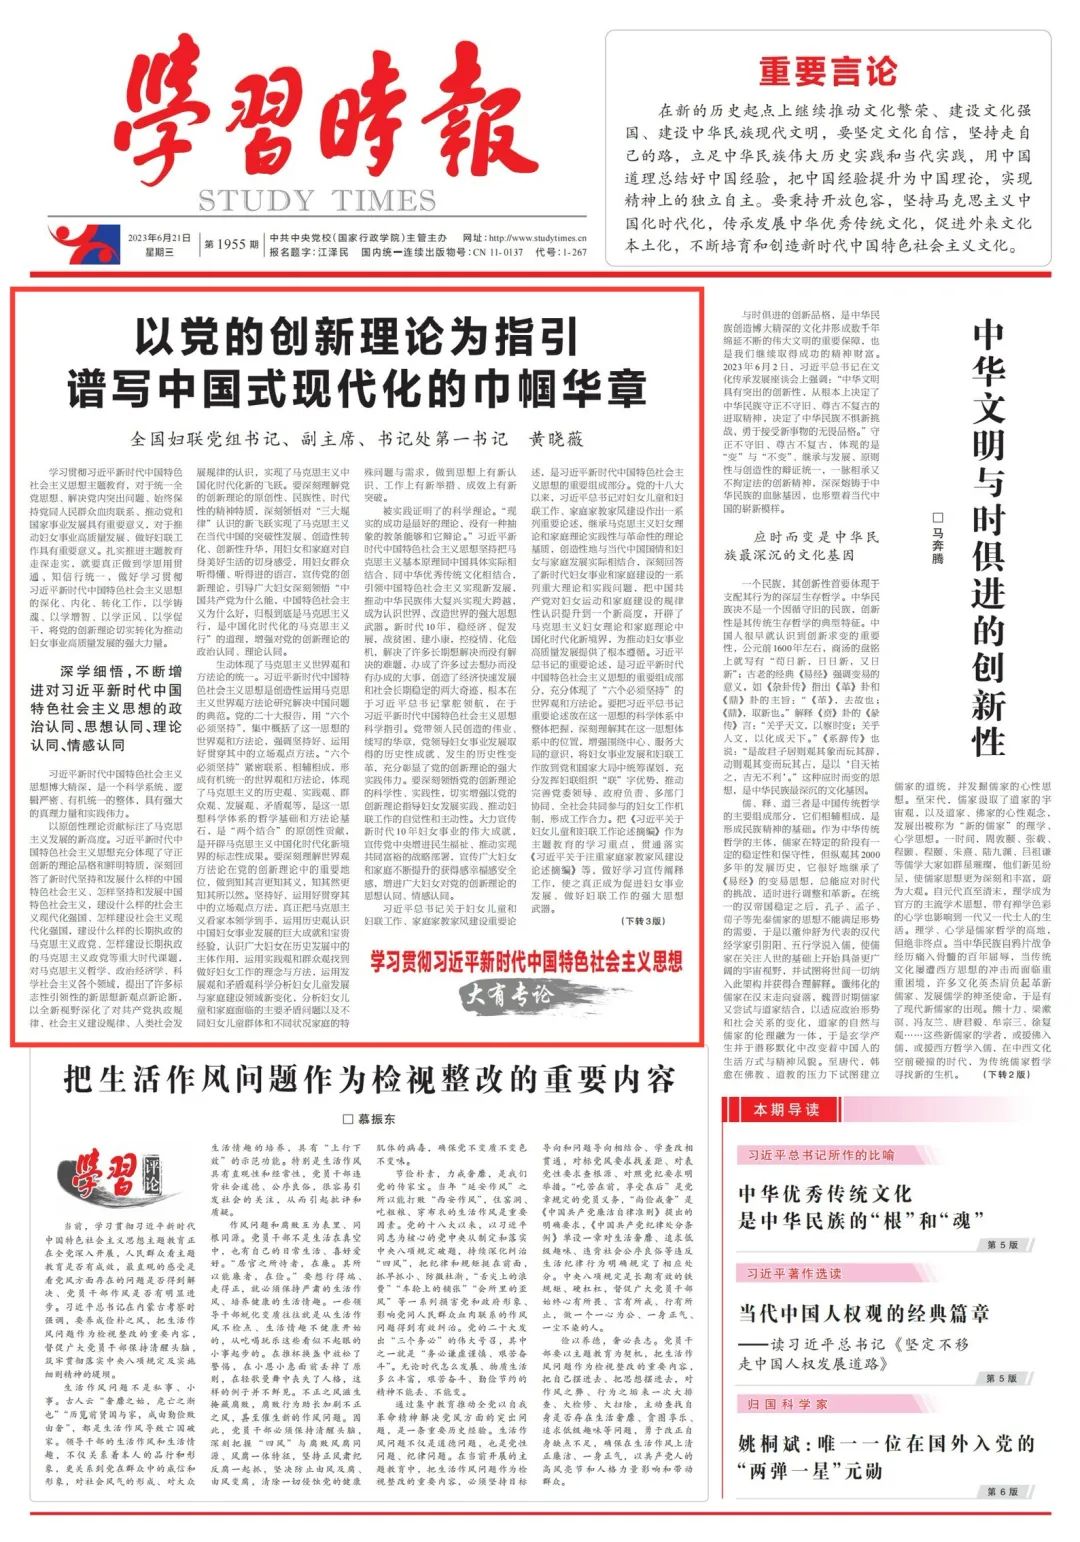 黄晓薇在《学习时报》发表署名文章《以党的创新理论为指引 谱写中国式现代化的巾帼华章》